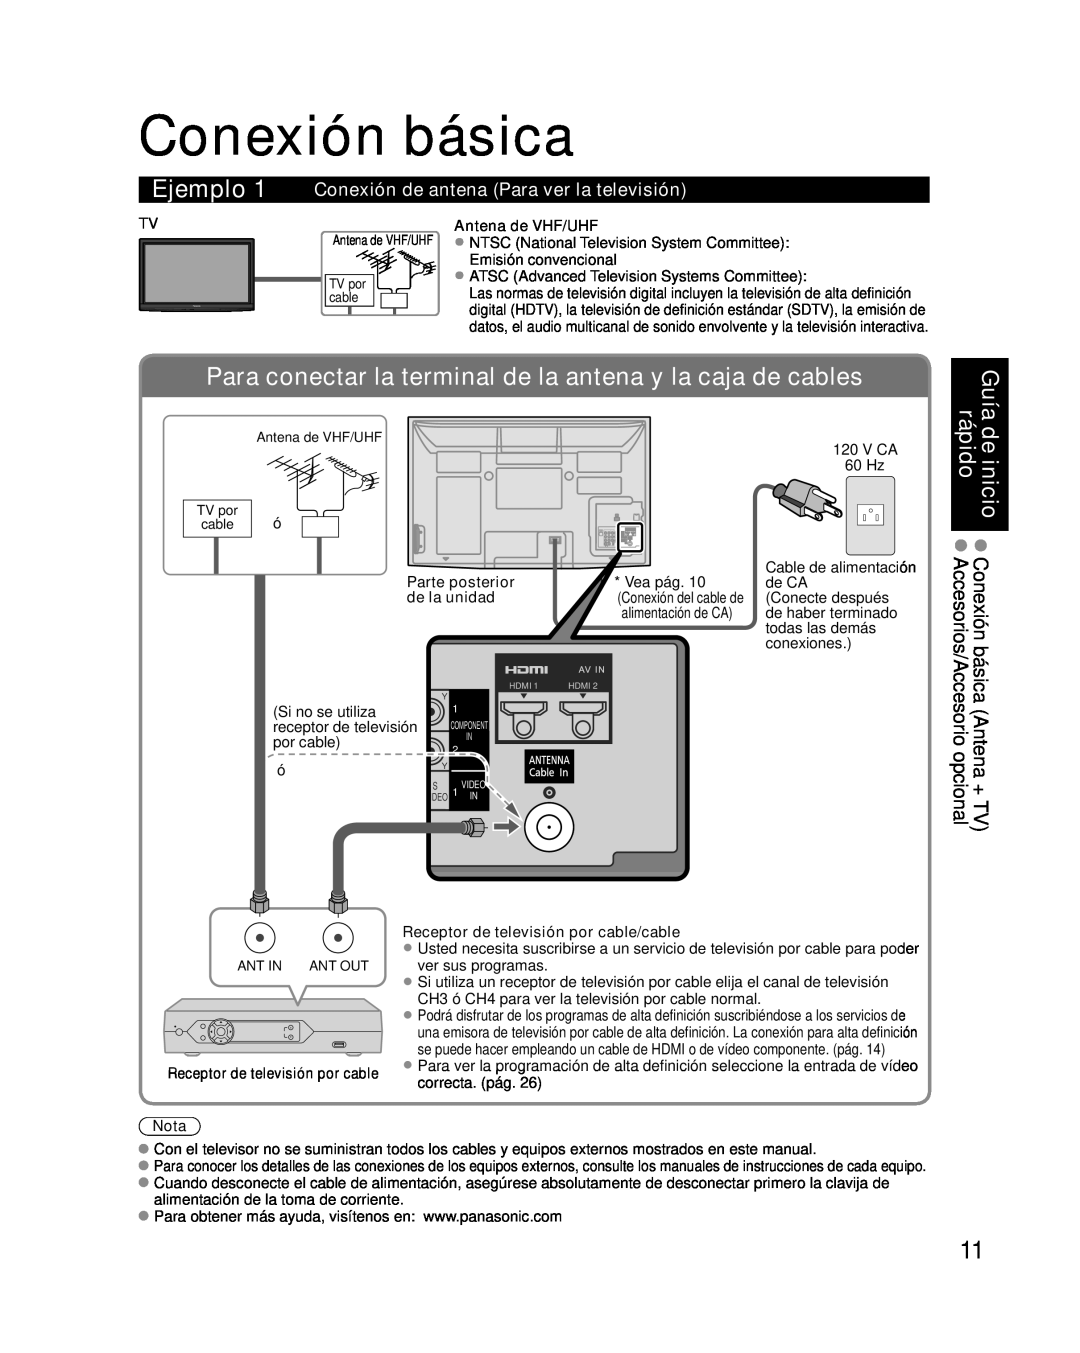 Panasonic TC-P46G10, TC-P50G10 Conexión básica, Ejemplo, Para conectar la terminal de la antena y la caja de cables, Guía 